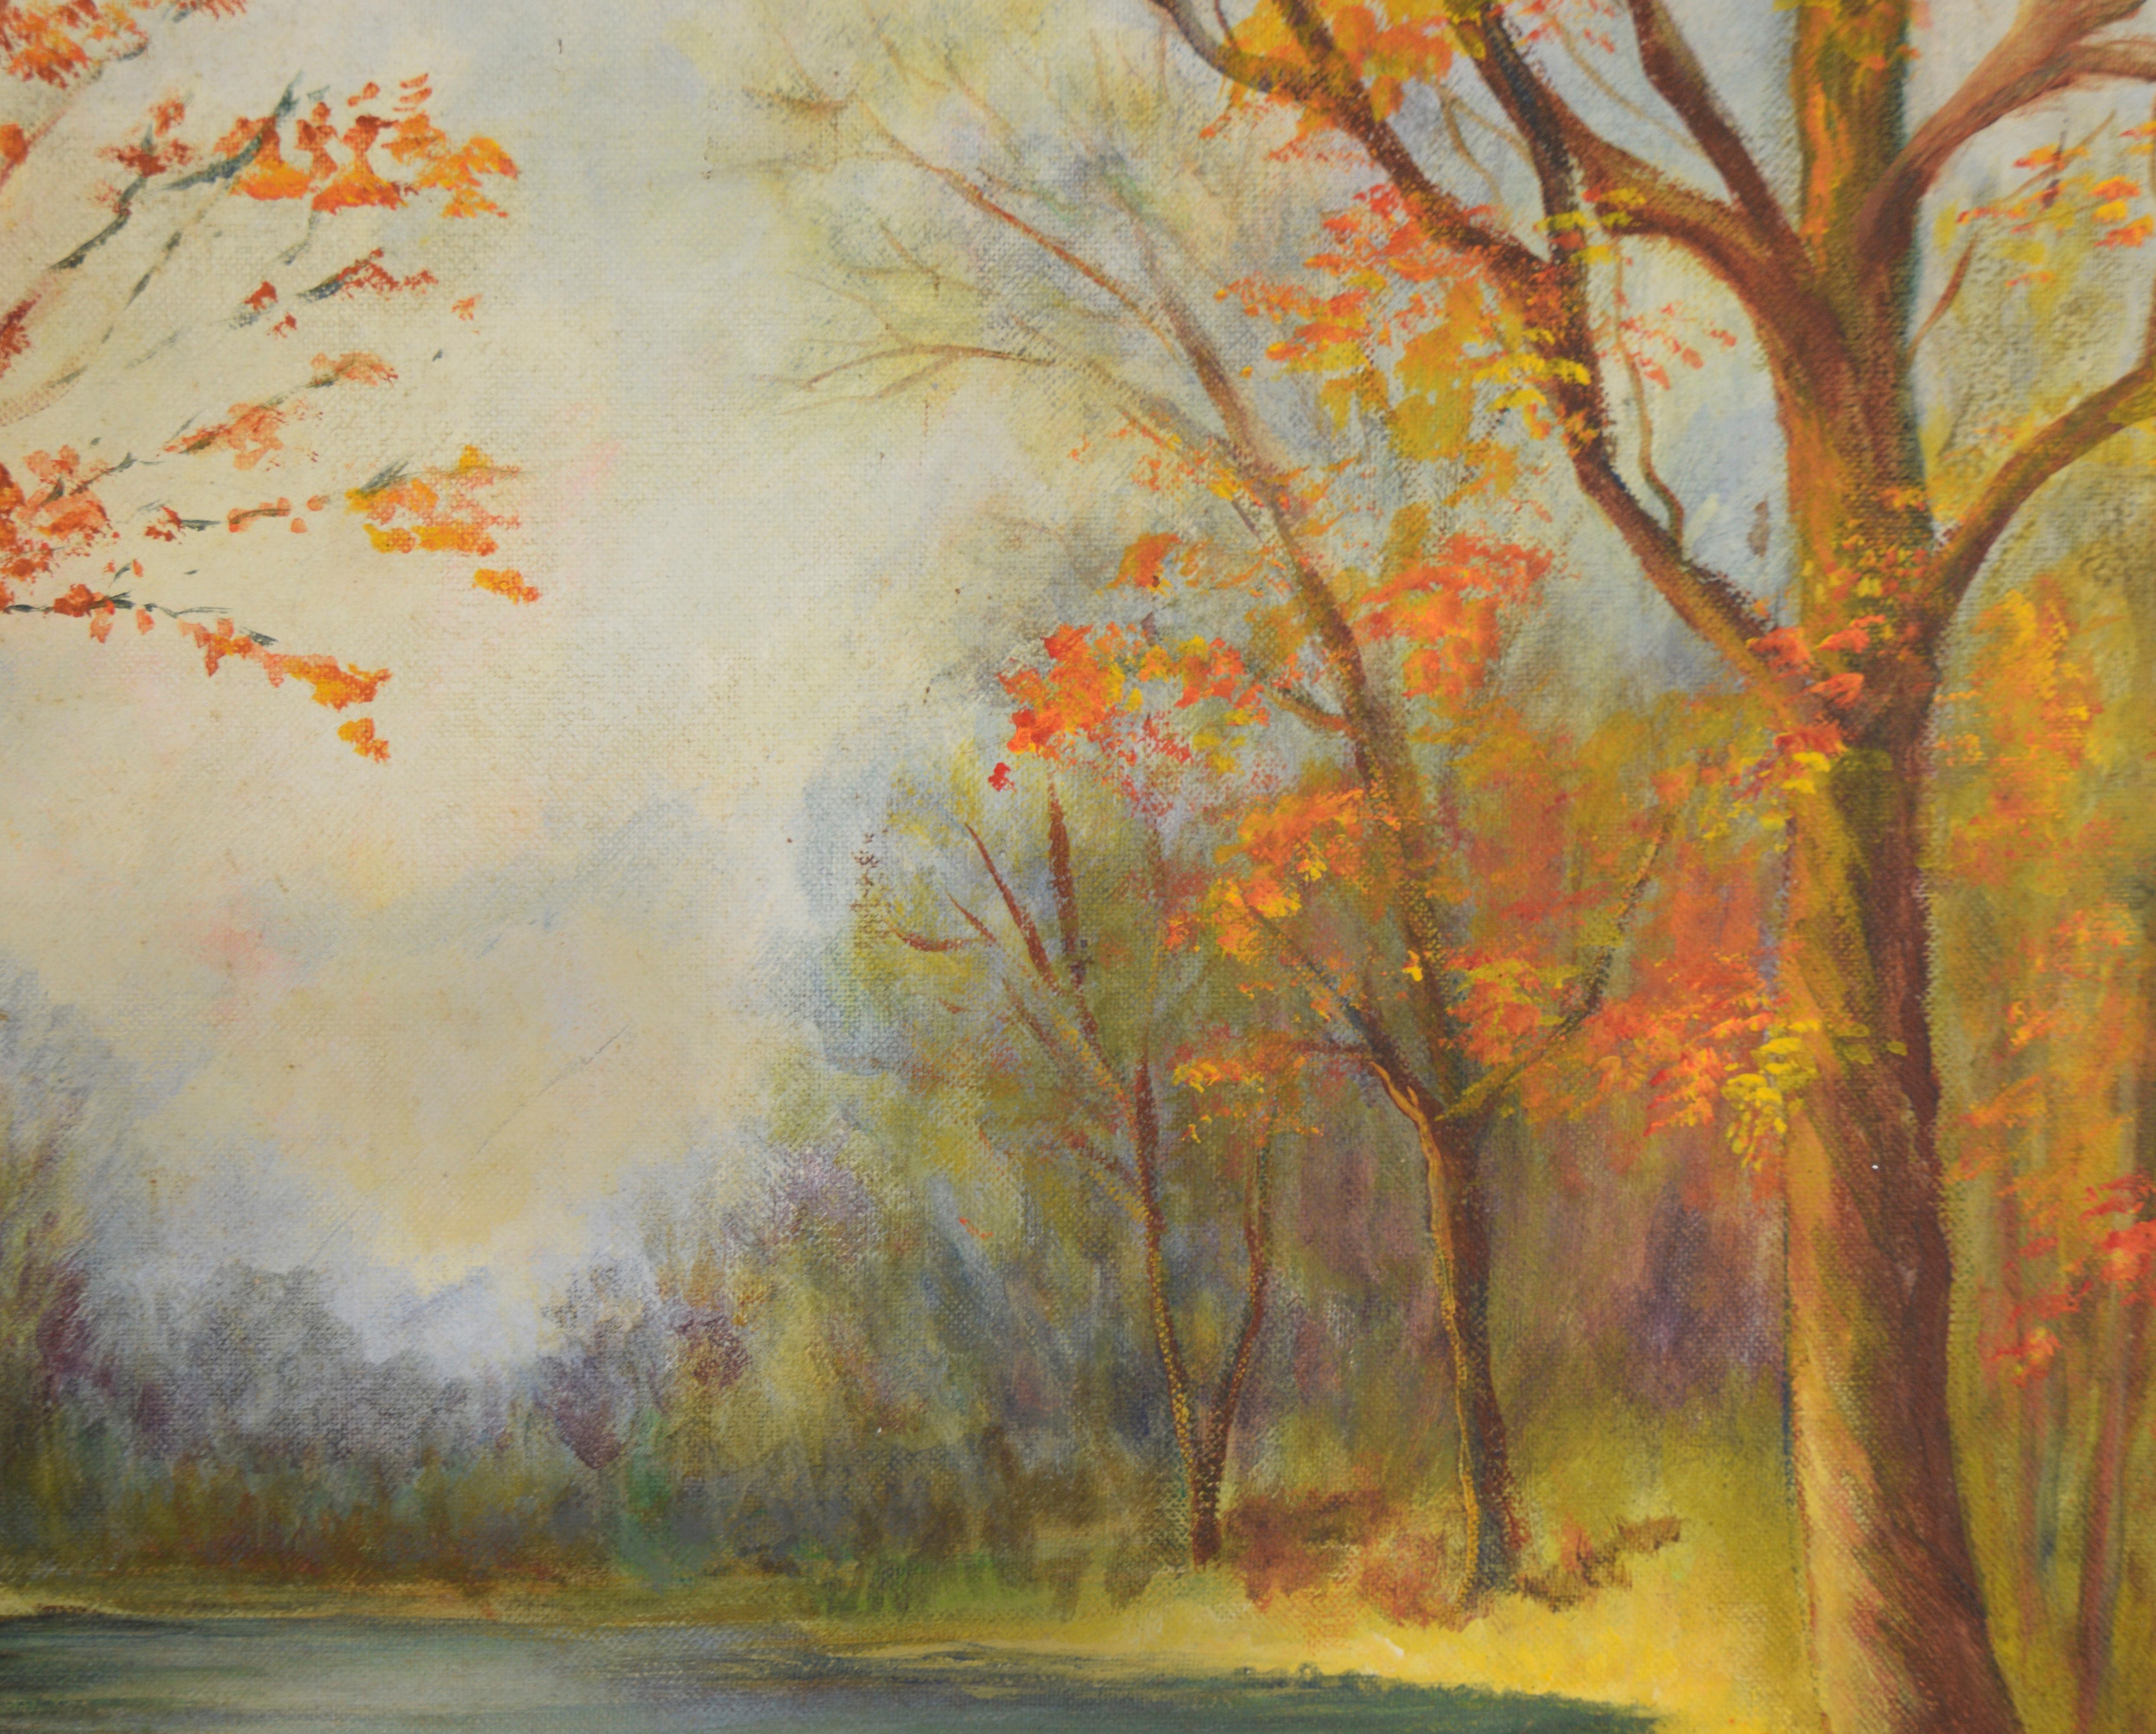 Autumn Stream, paysage à l'huile original de 1973

Peinture impressionniste originale de 1973 représentant un ruisseau tranquille dans une forêt d'automne, réalisée par Jean Kenning.  (Angleterre/Canada, 1916-2004).  Jean était une artiste accomplie